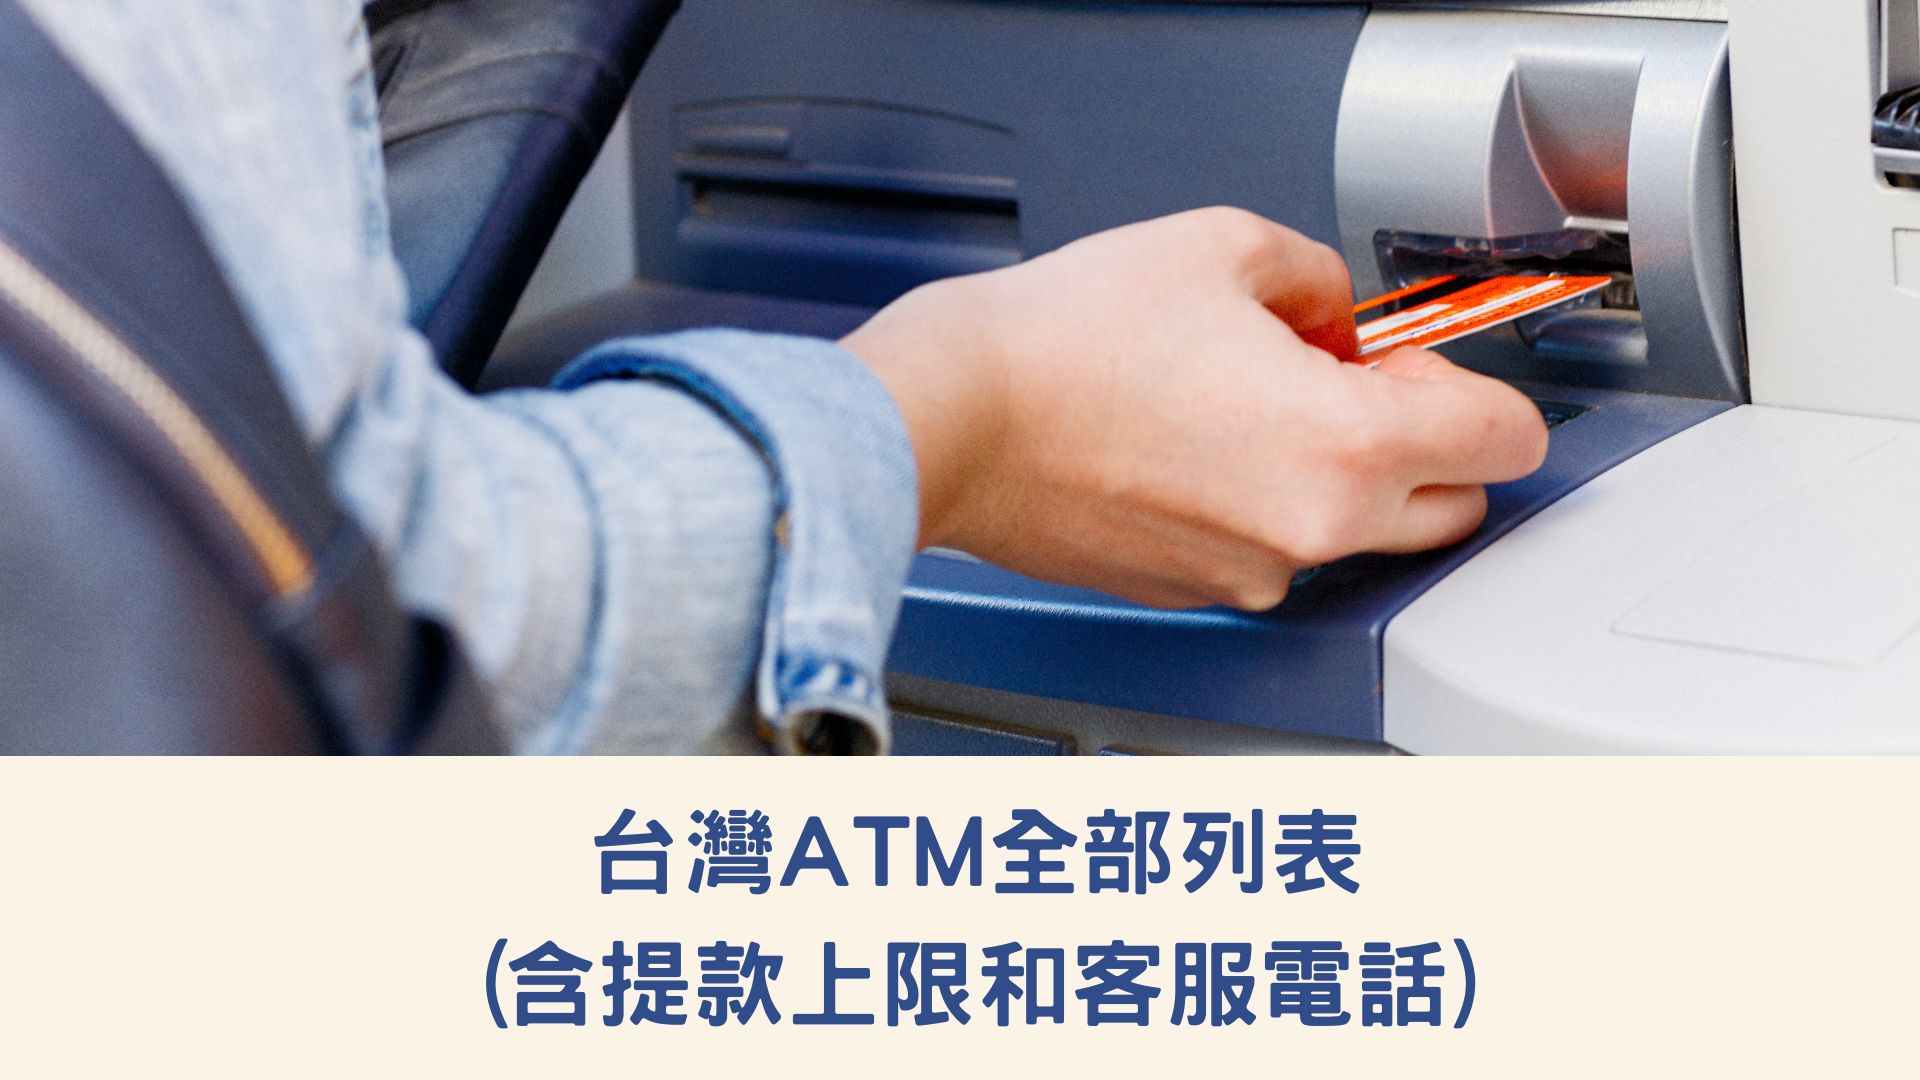 台灣ATM全部列表(含提款上限和客服電話)